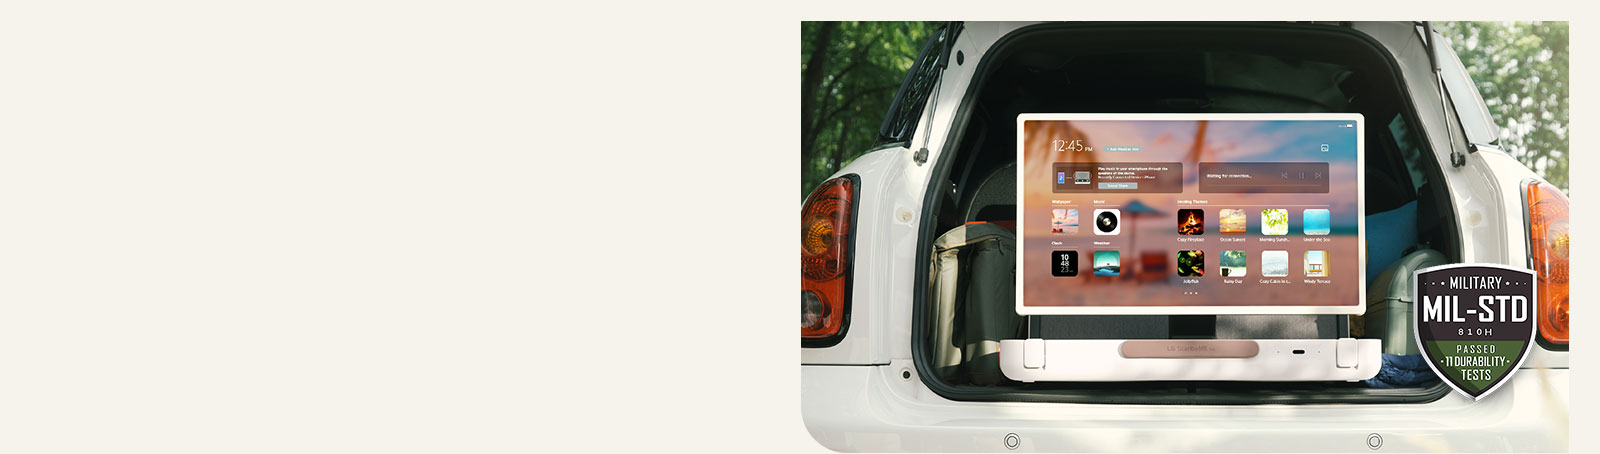 Vue de face du LG StanbyME Go. Le produit est placé dans la voiture, l’écran pivoté à l’horizontale, montrant l’écran d’accueil. En bas à gauche de l’image, l’icône de norme militaire est affichée.